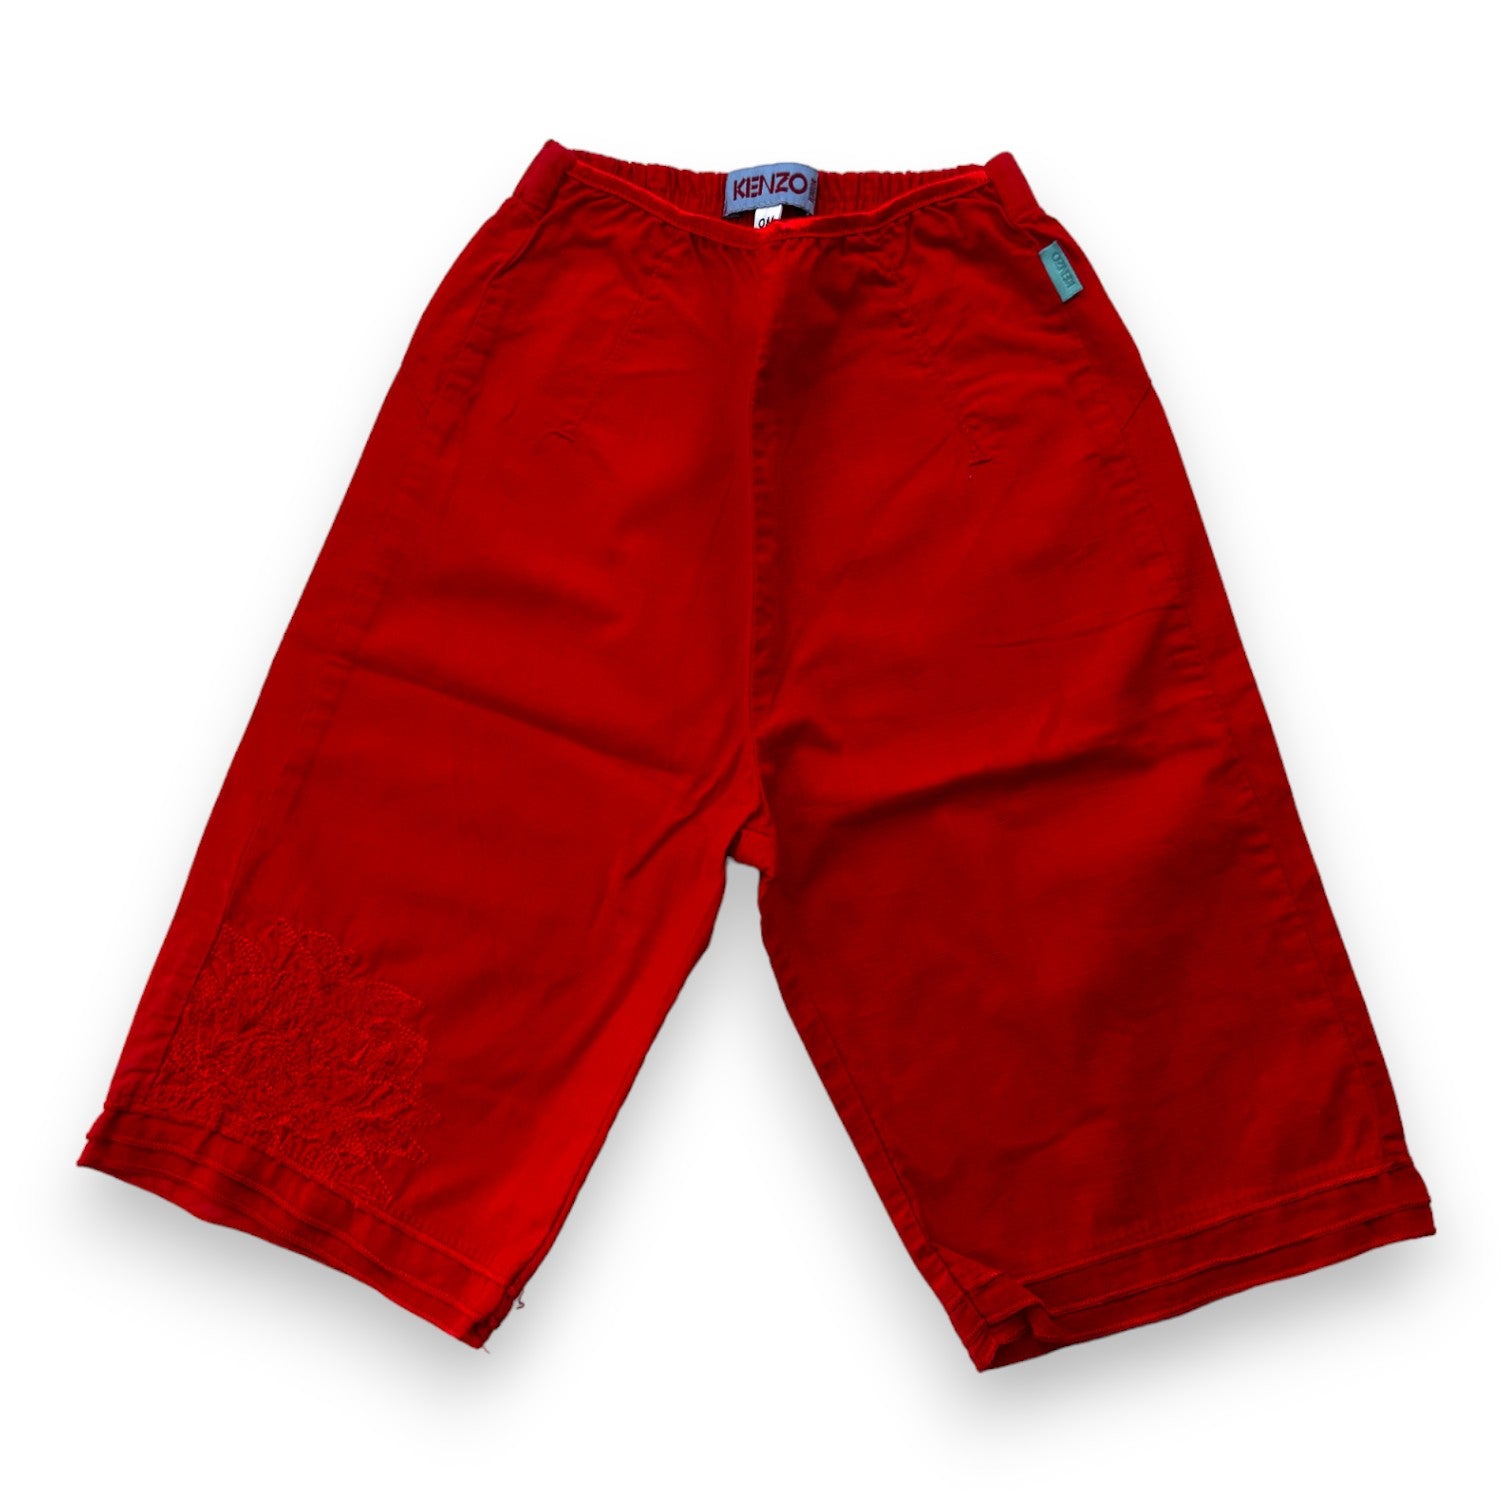 KENZO - Pantalon fluide rouge - 9 mois